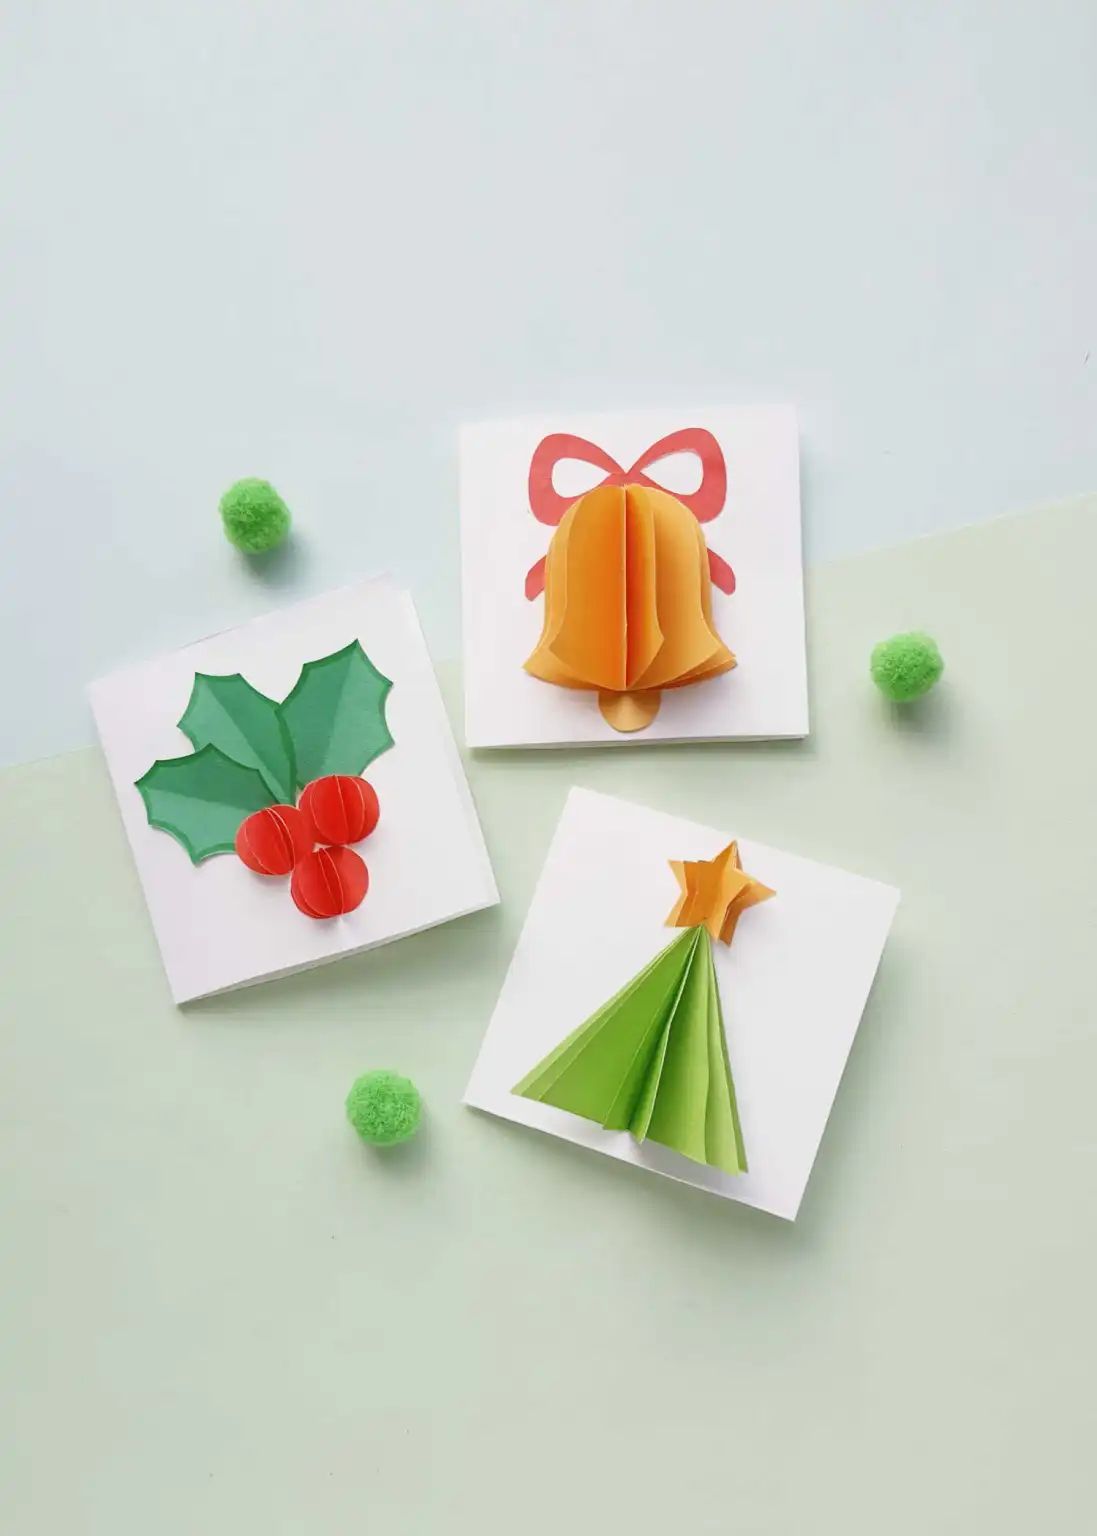 3D Christmas cards